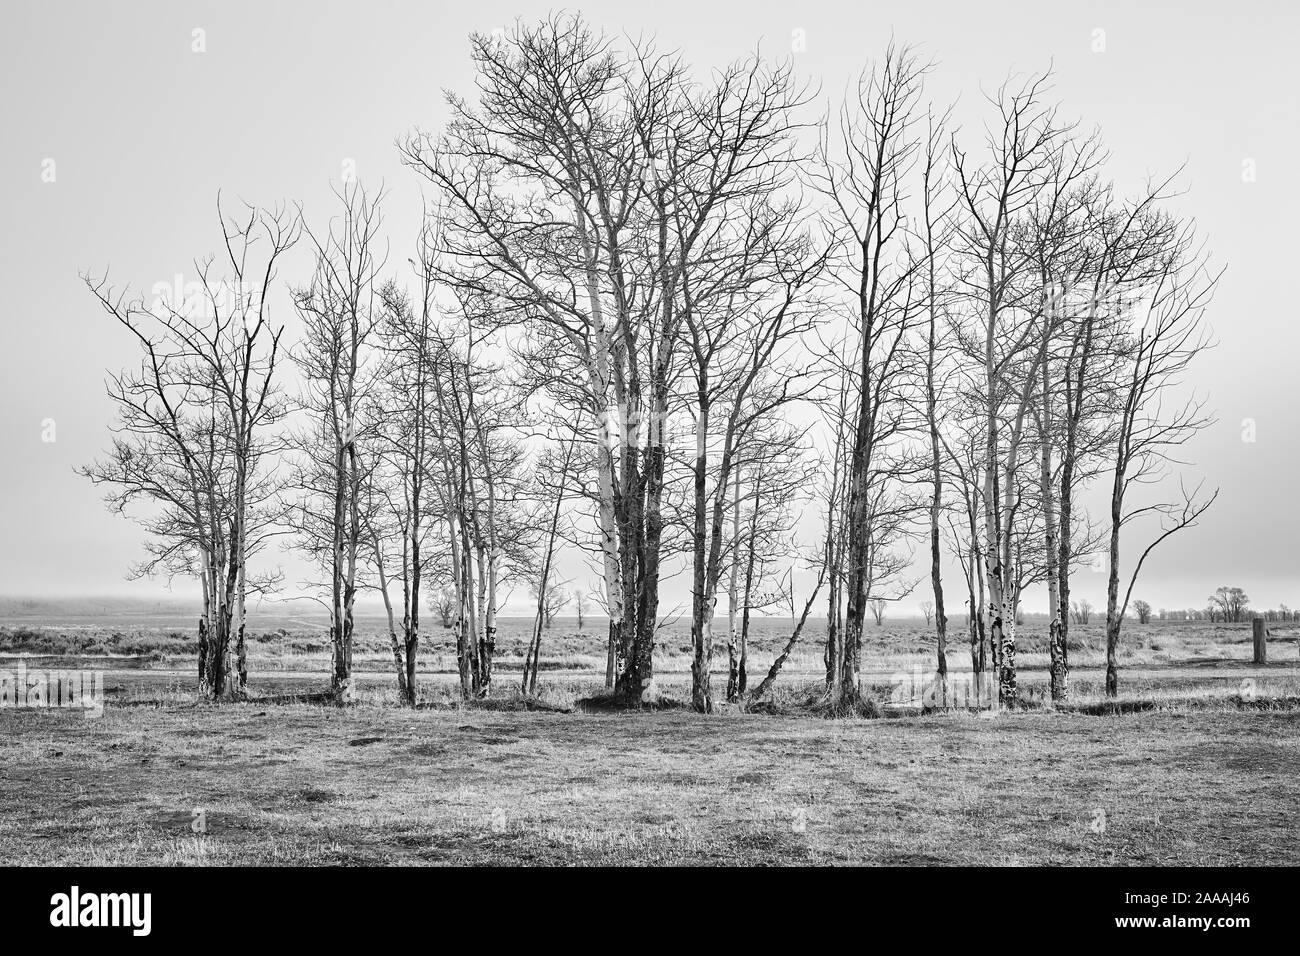 Immagine in bianco e nero di un paesaggio rurale in nebbioso giorno, Wyoming negli Stati Uniti. Foto Stock